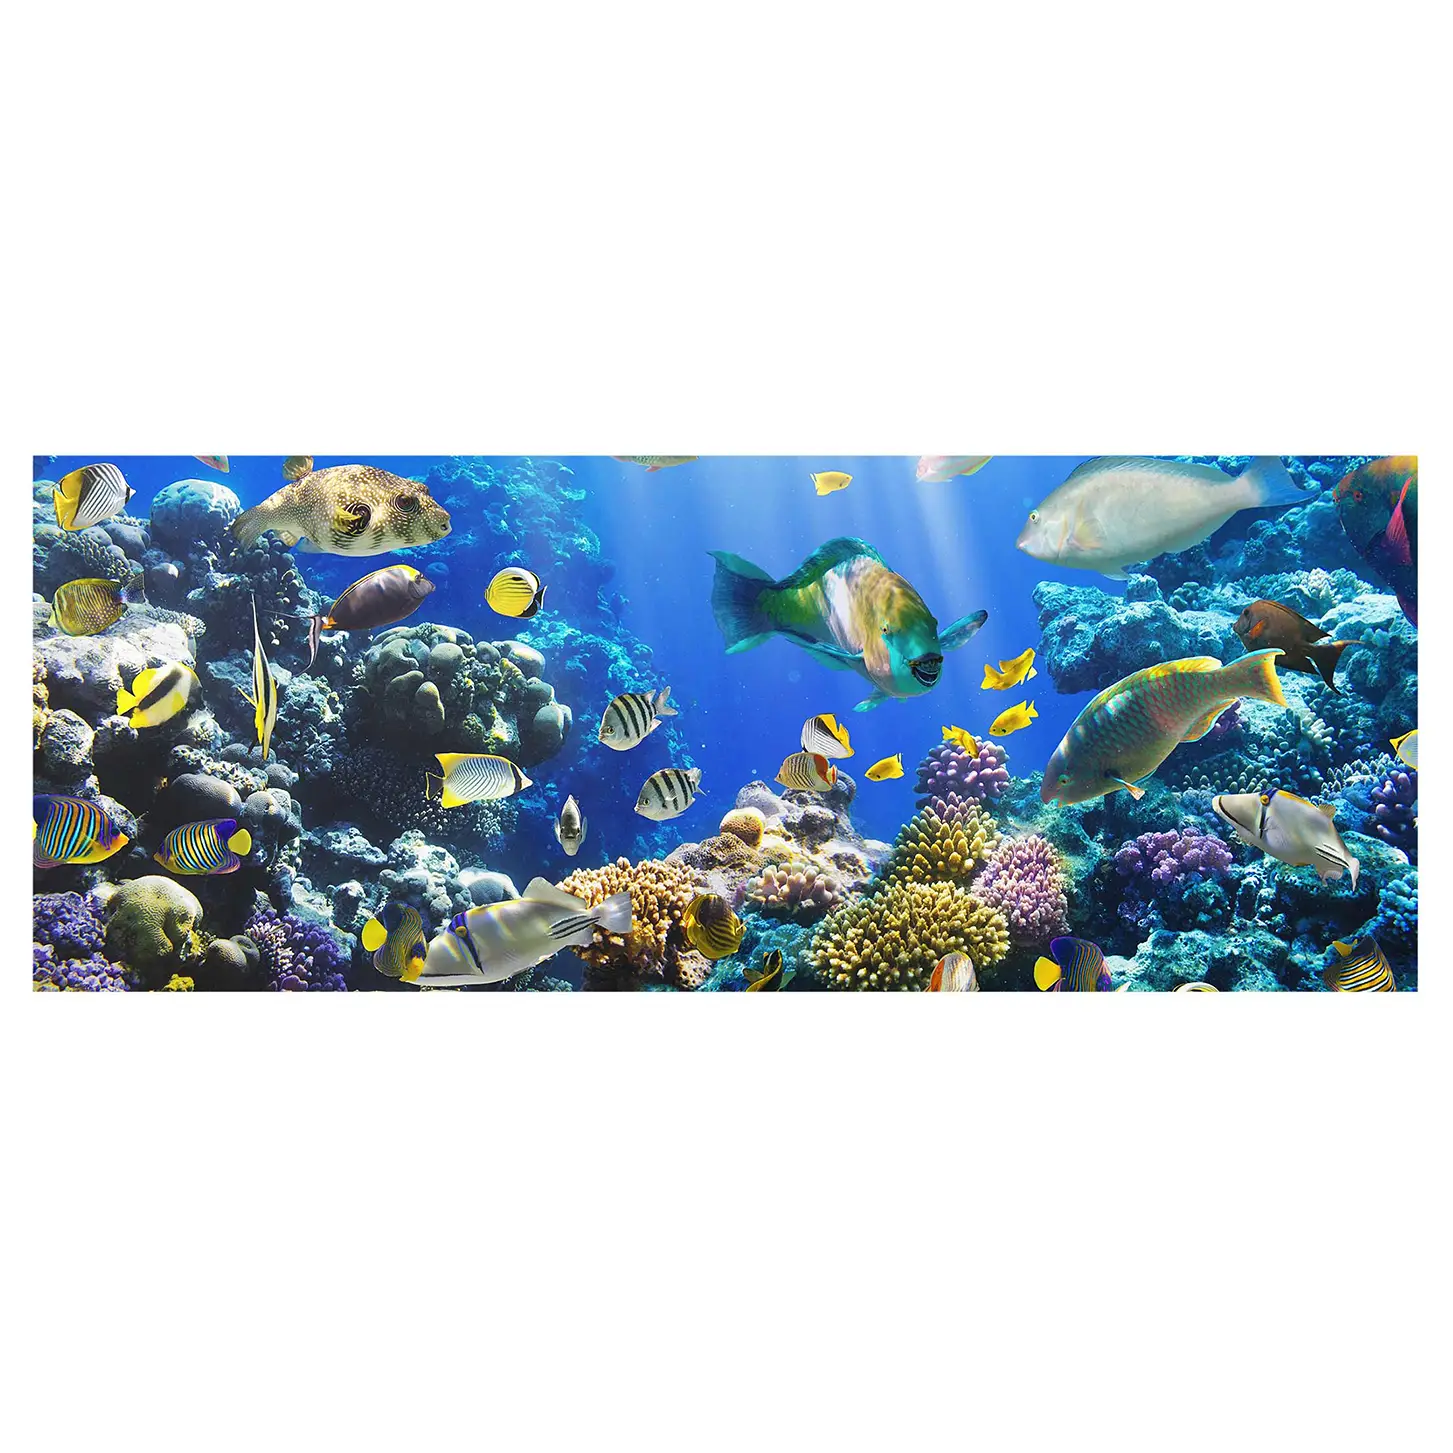 Underwater Bild Reef